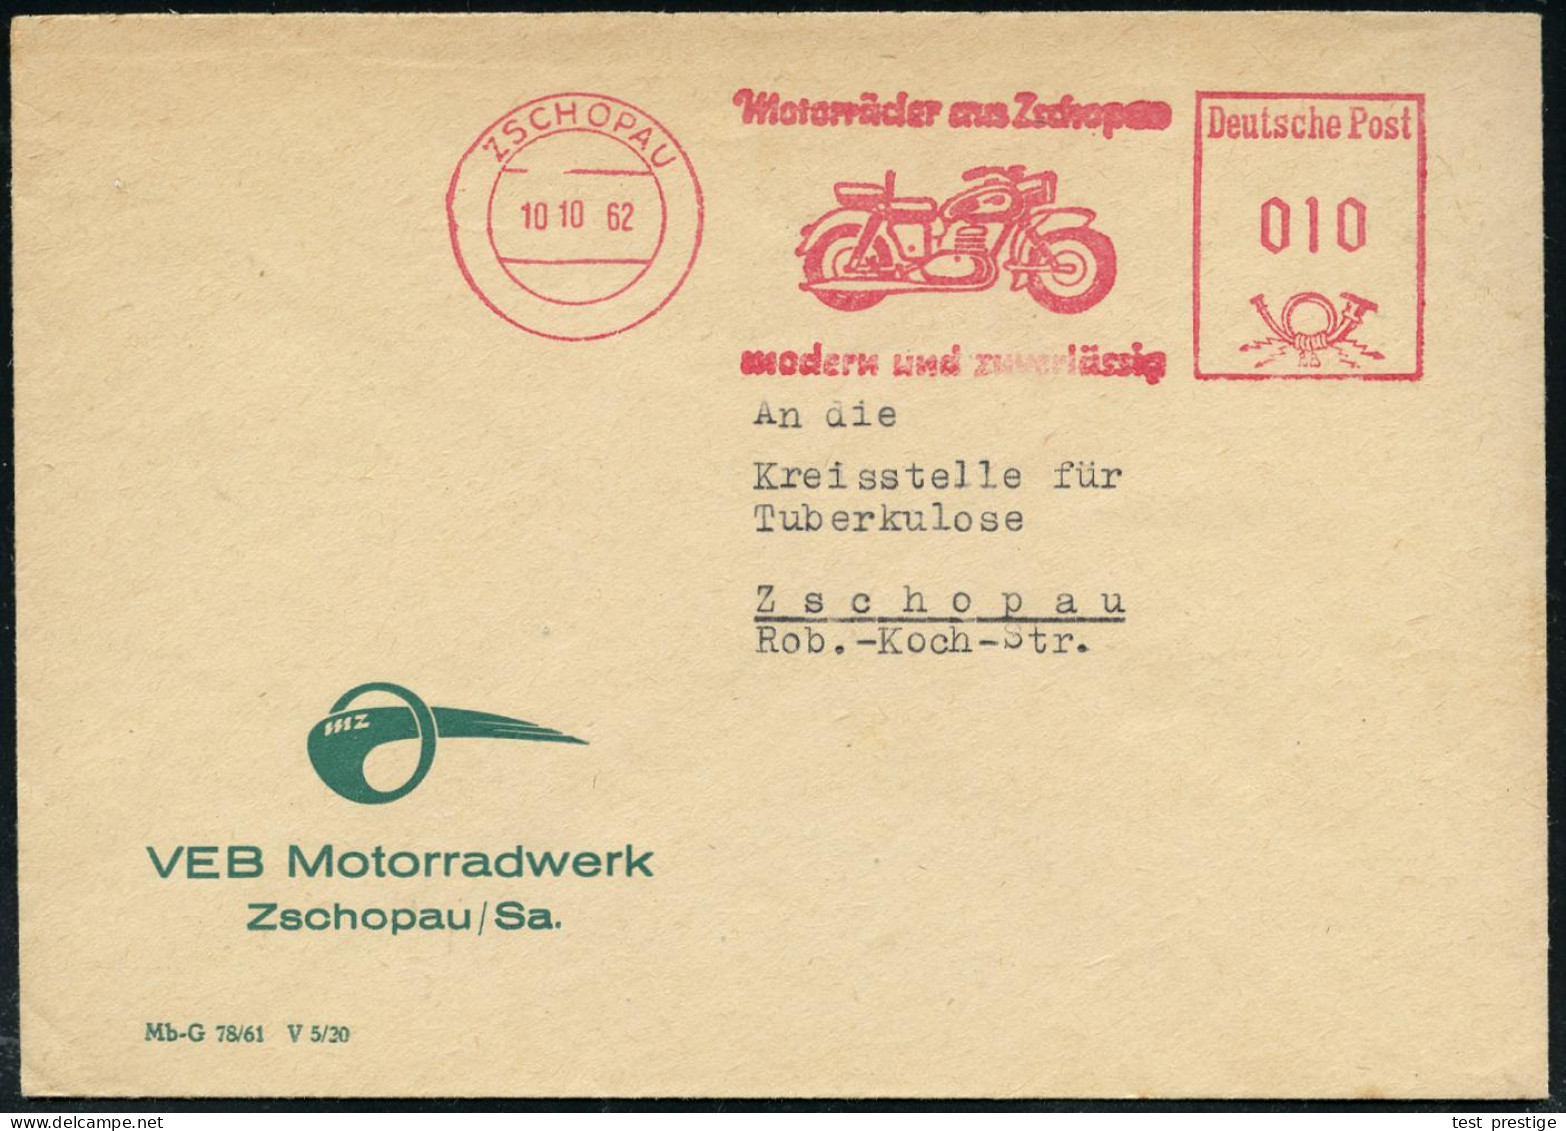 ZSCHOPAU/ Motorräder Aus Zschopau/ Modern U.zuverlässig 1962 (10.10.) AFS = Mototrrad "M Z" , Firmenbief Mit MZ-Logo (=  - Motorbikes